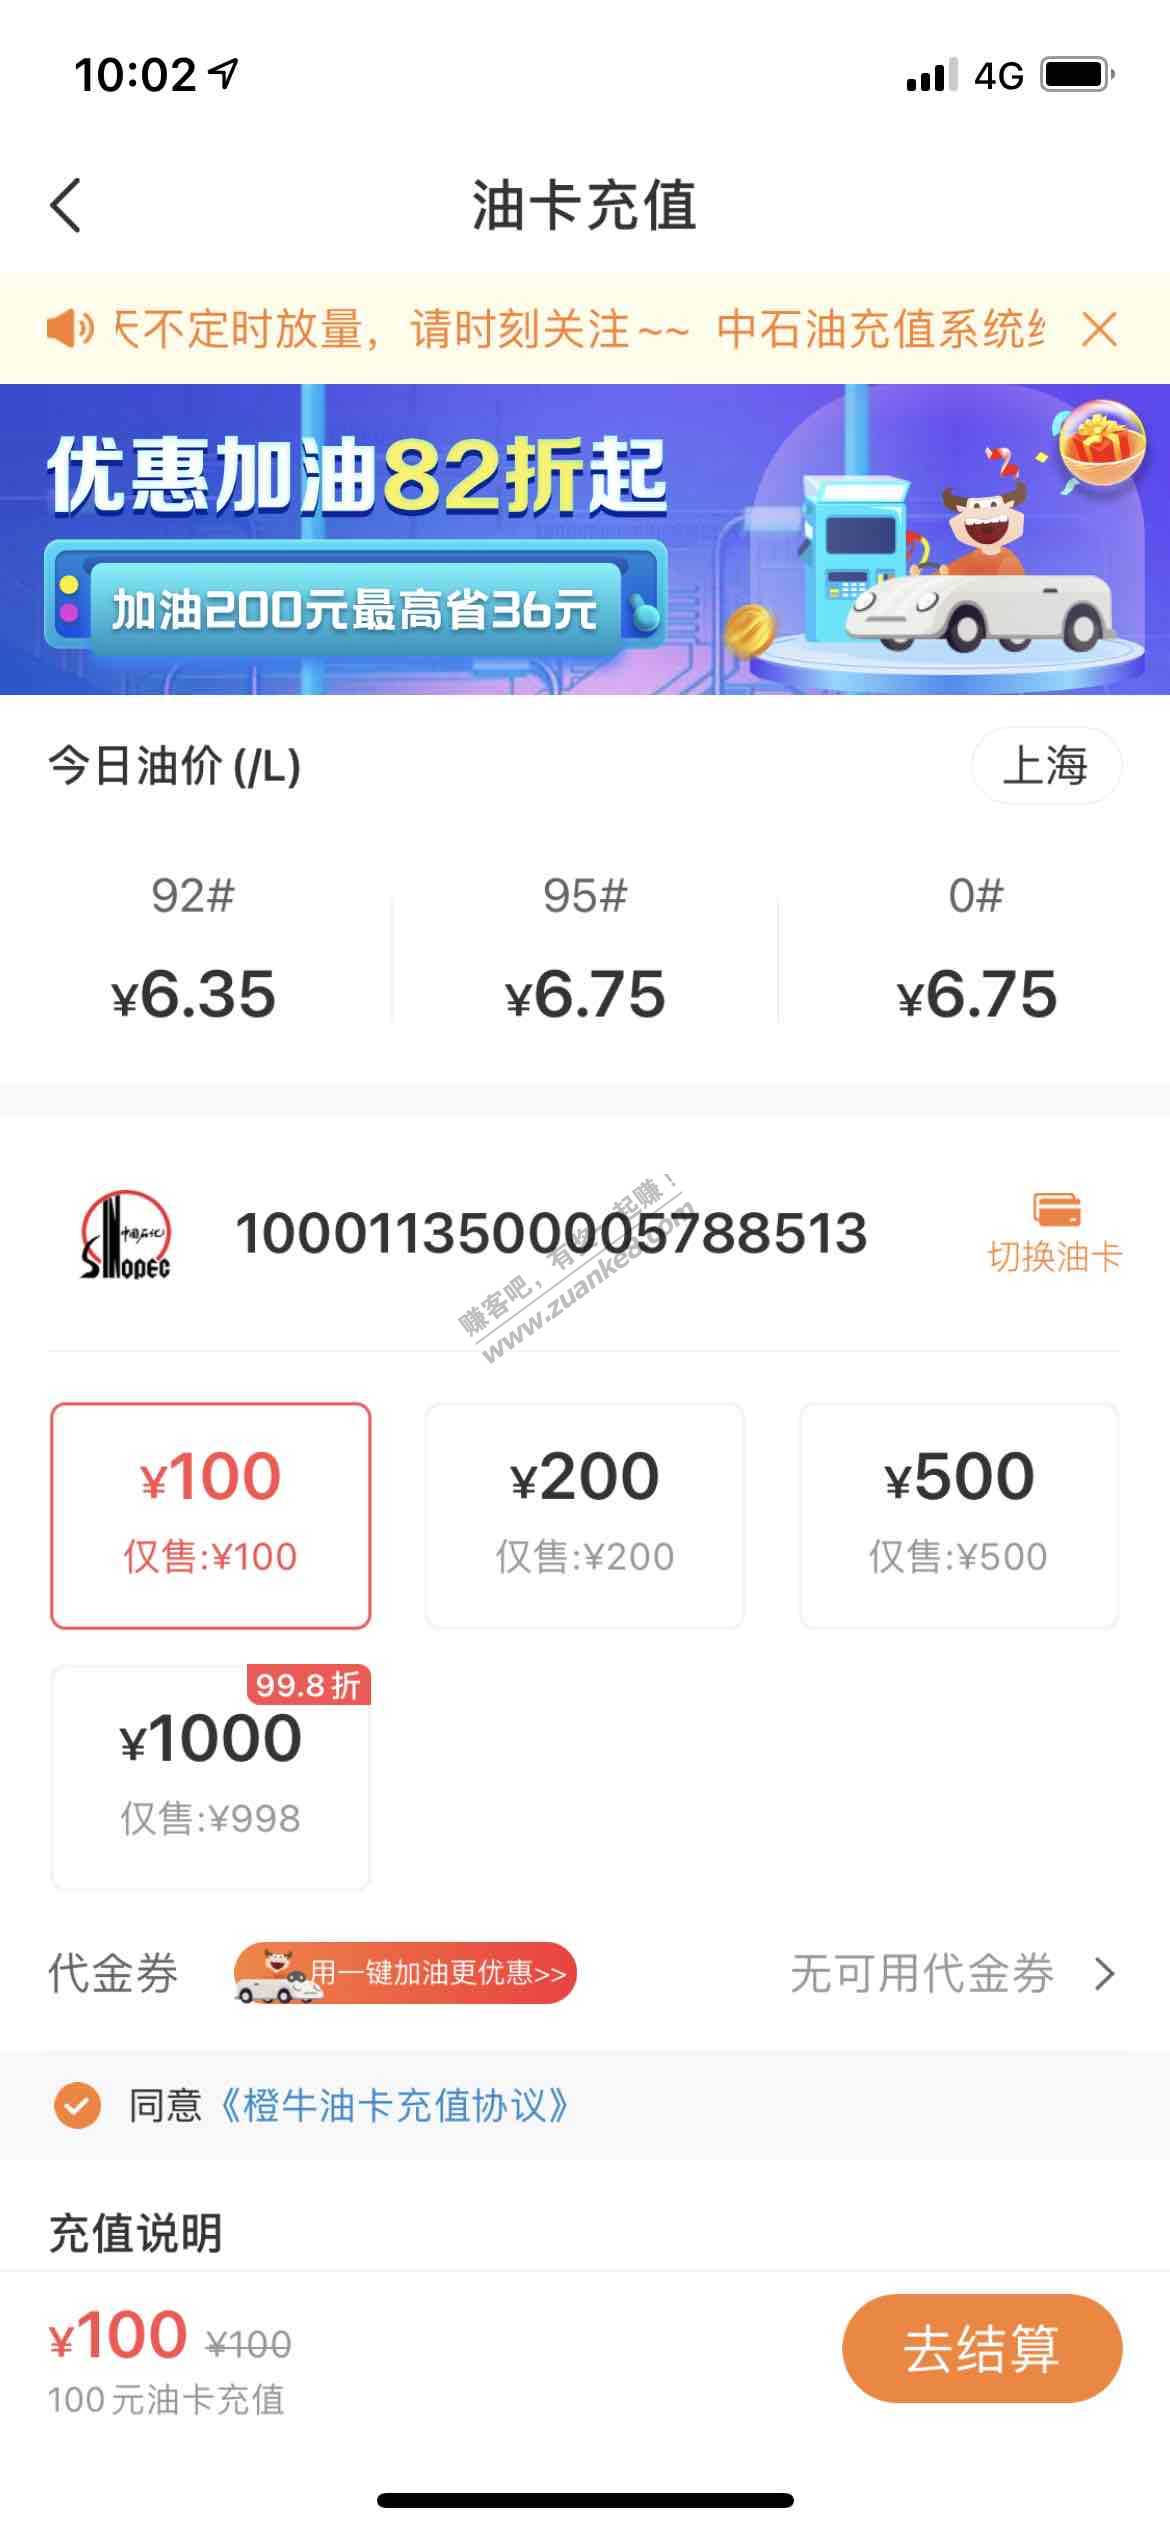 线报-「橙牛」100油卡有货了-冲-惠小助(52huixz.com)